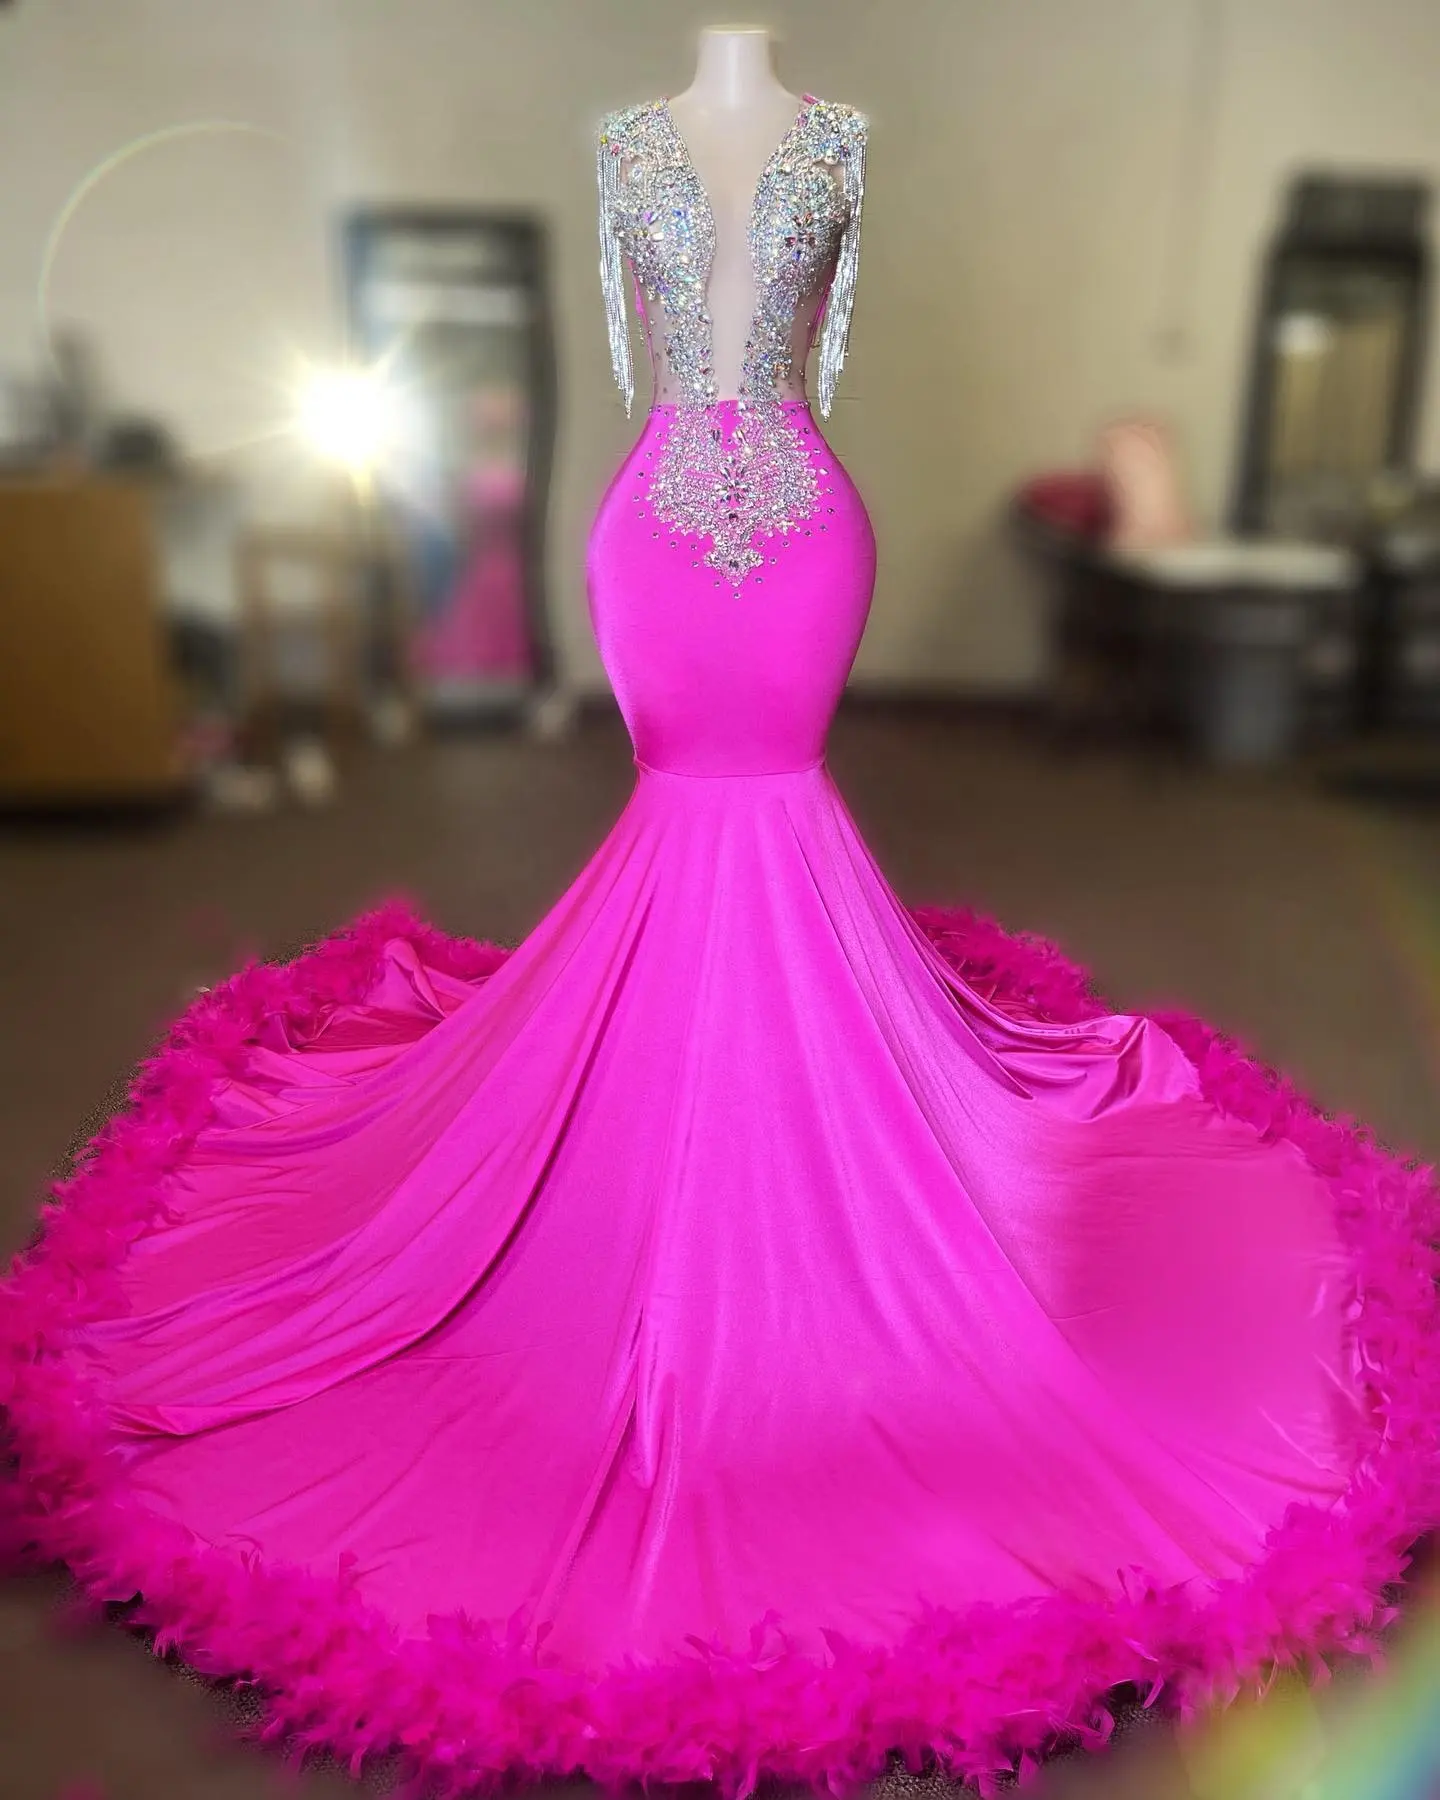 Ocstrade Pink High Rhinestone Vestidos De graduación 2022 Vestido De Gala Vestido De noche Vestidos Do Baile De Finalistas Mujeres Maxi Vestidos